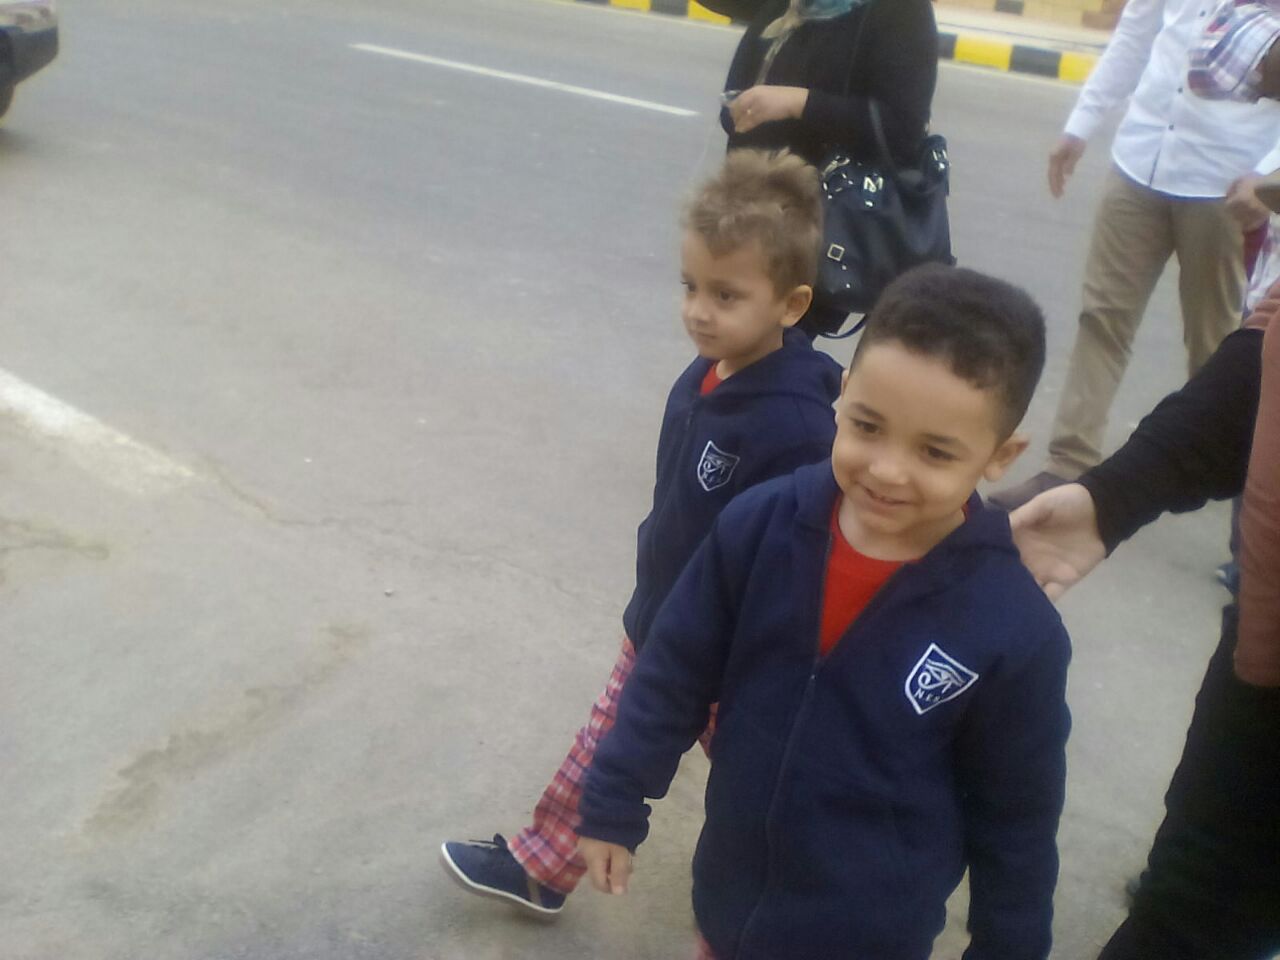 سعادة الطلاب بدخول المدرسة فى اول يوم بمدينة طيبة